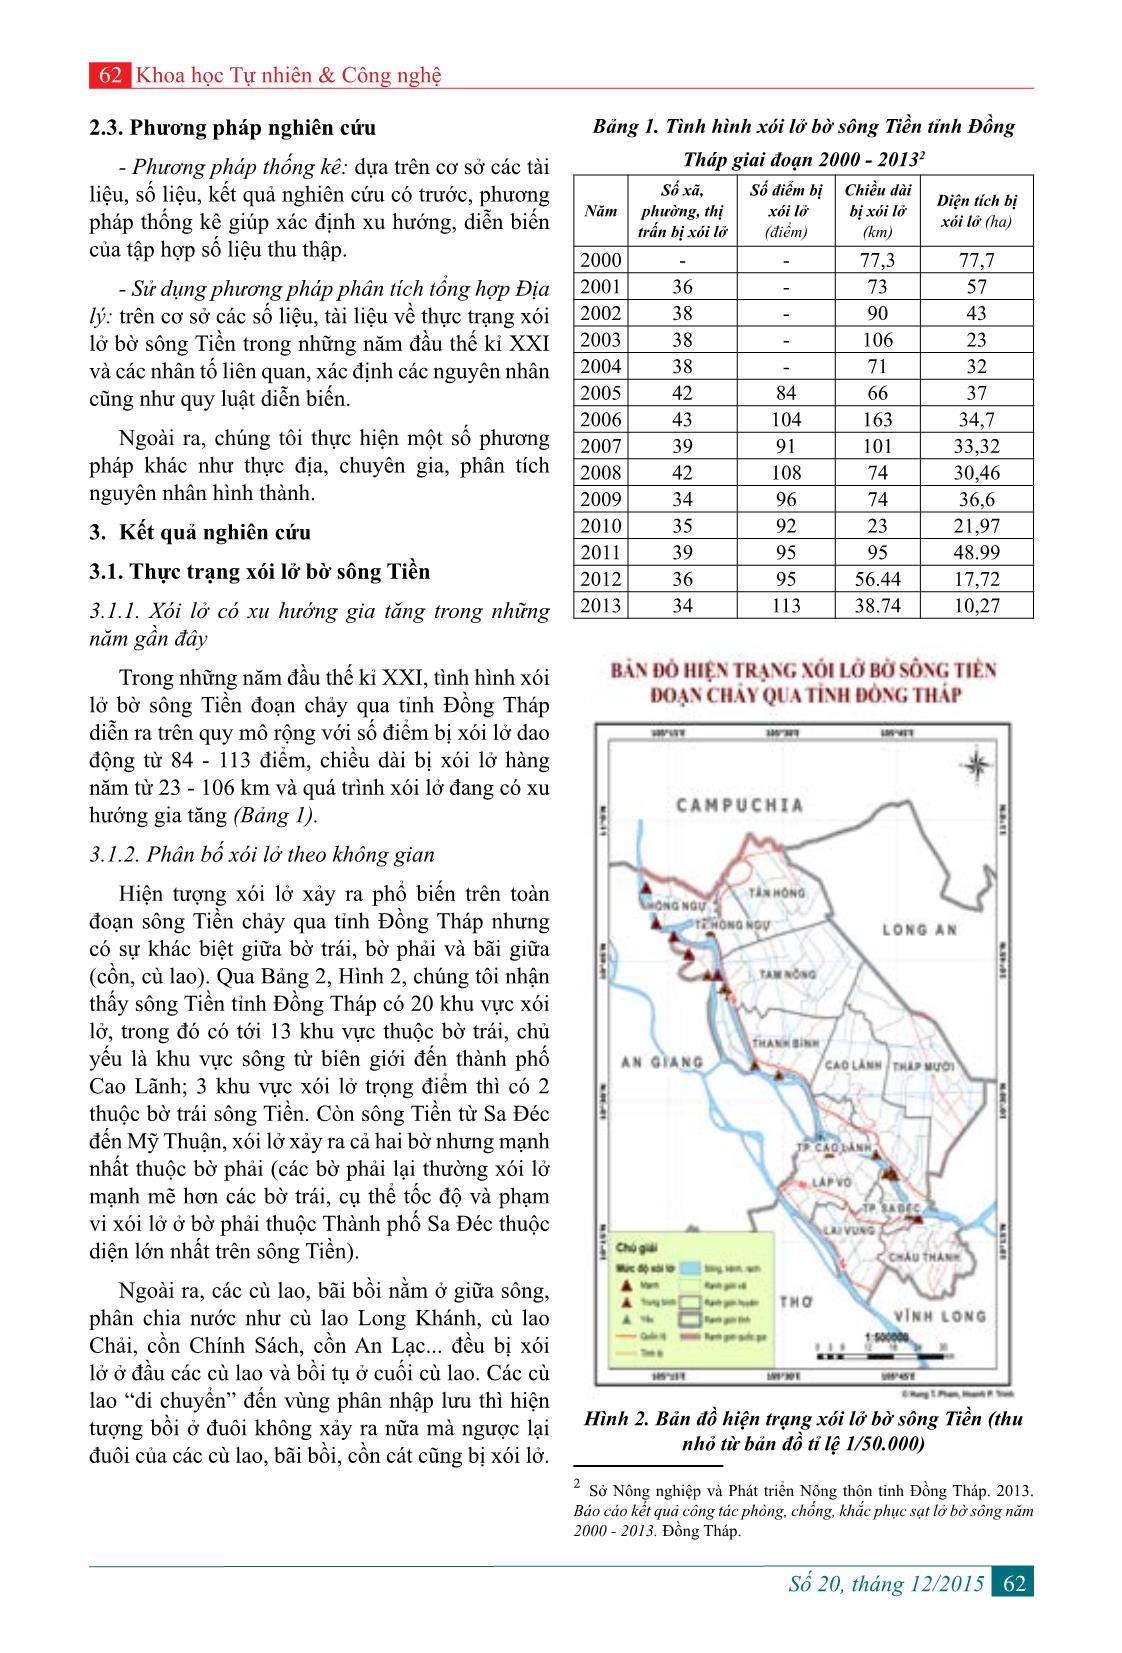 Đánh giá thực trạng và nguyên nhân xói lở bờ sông Tiền đoạn chảy qua tỉnh Đồng Tháp trang 2